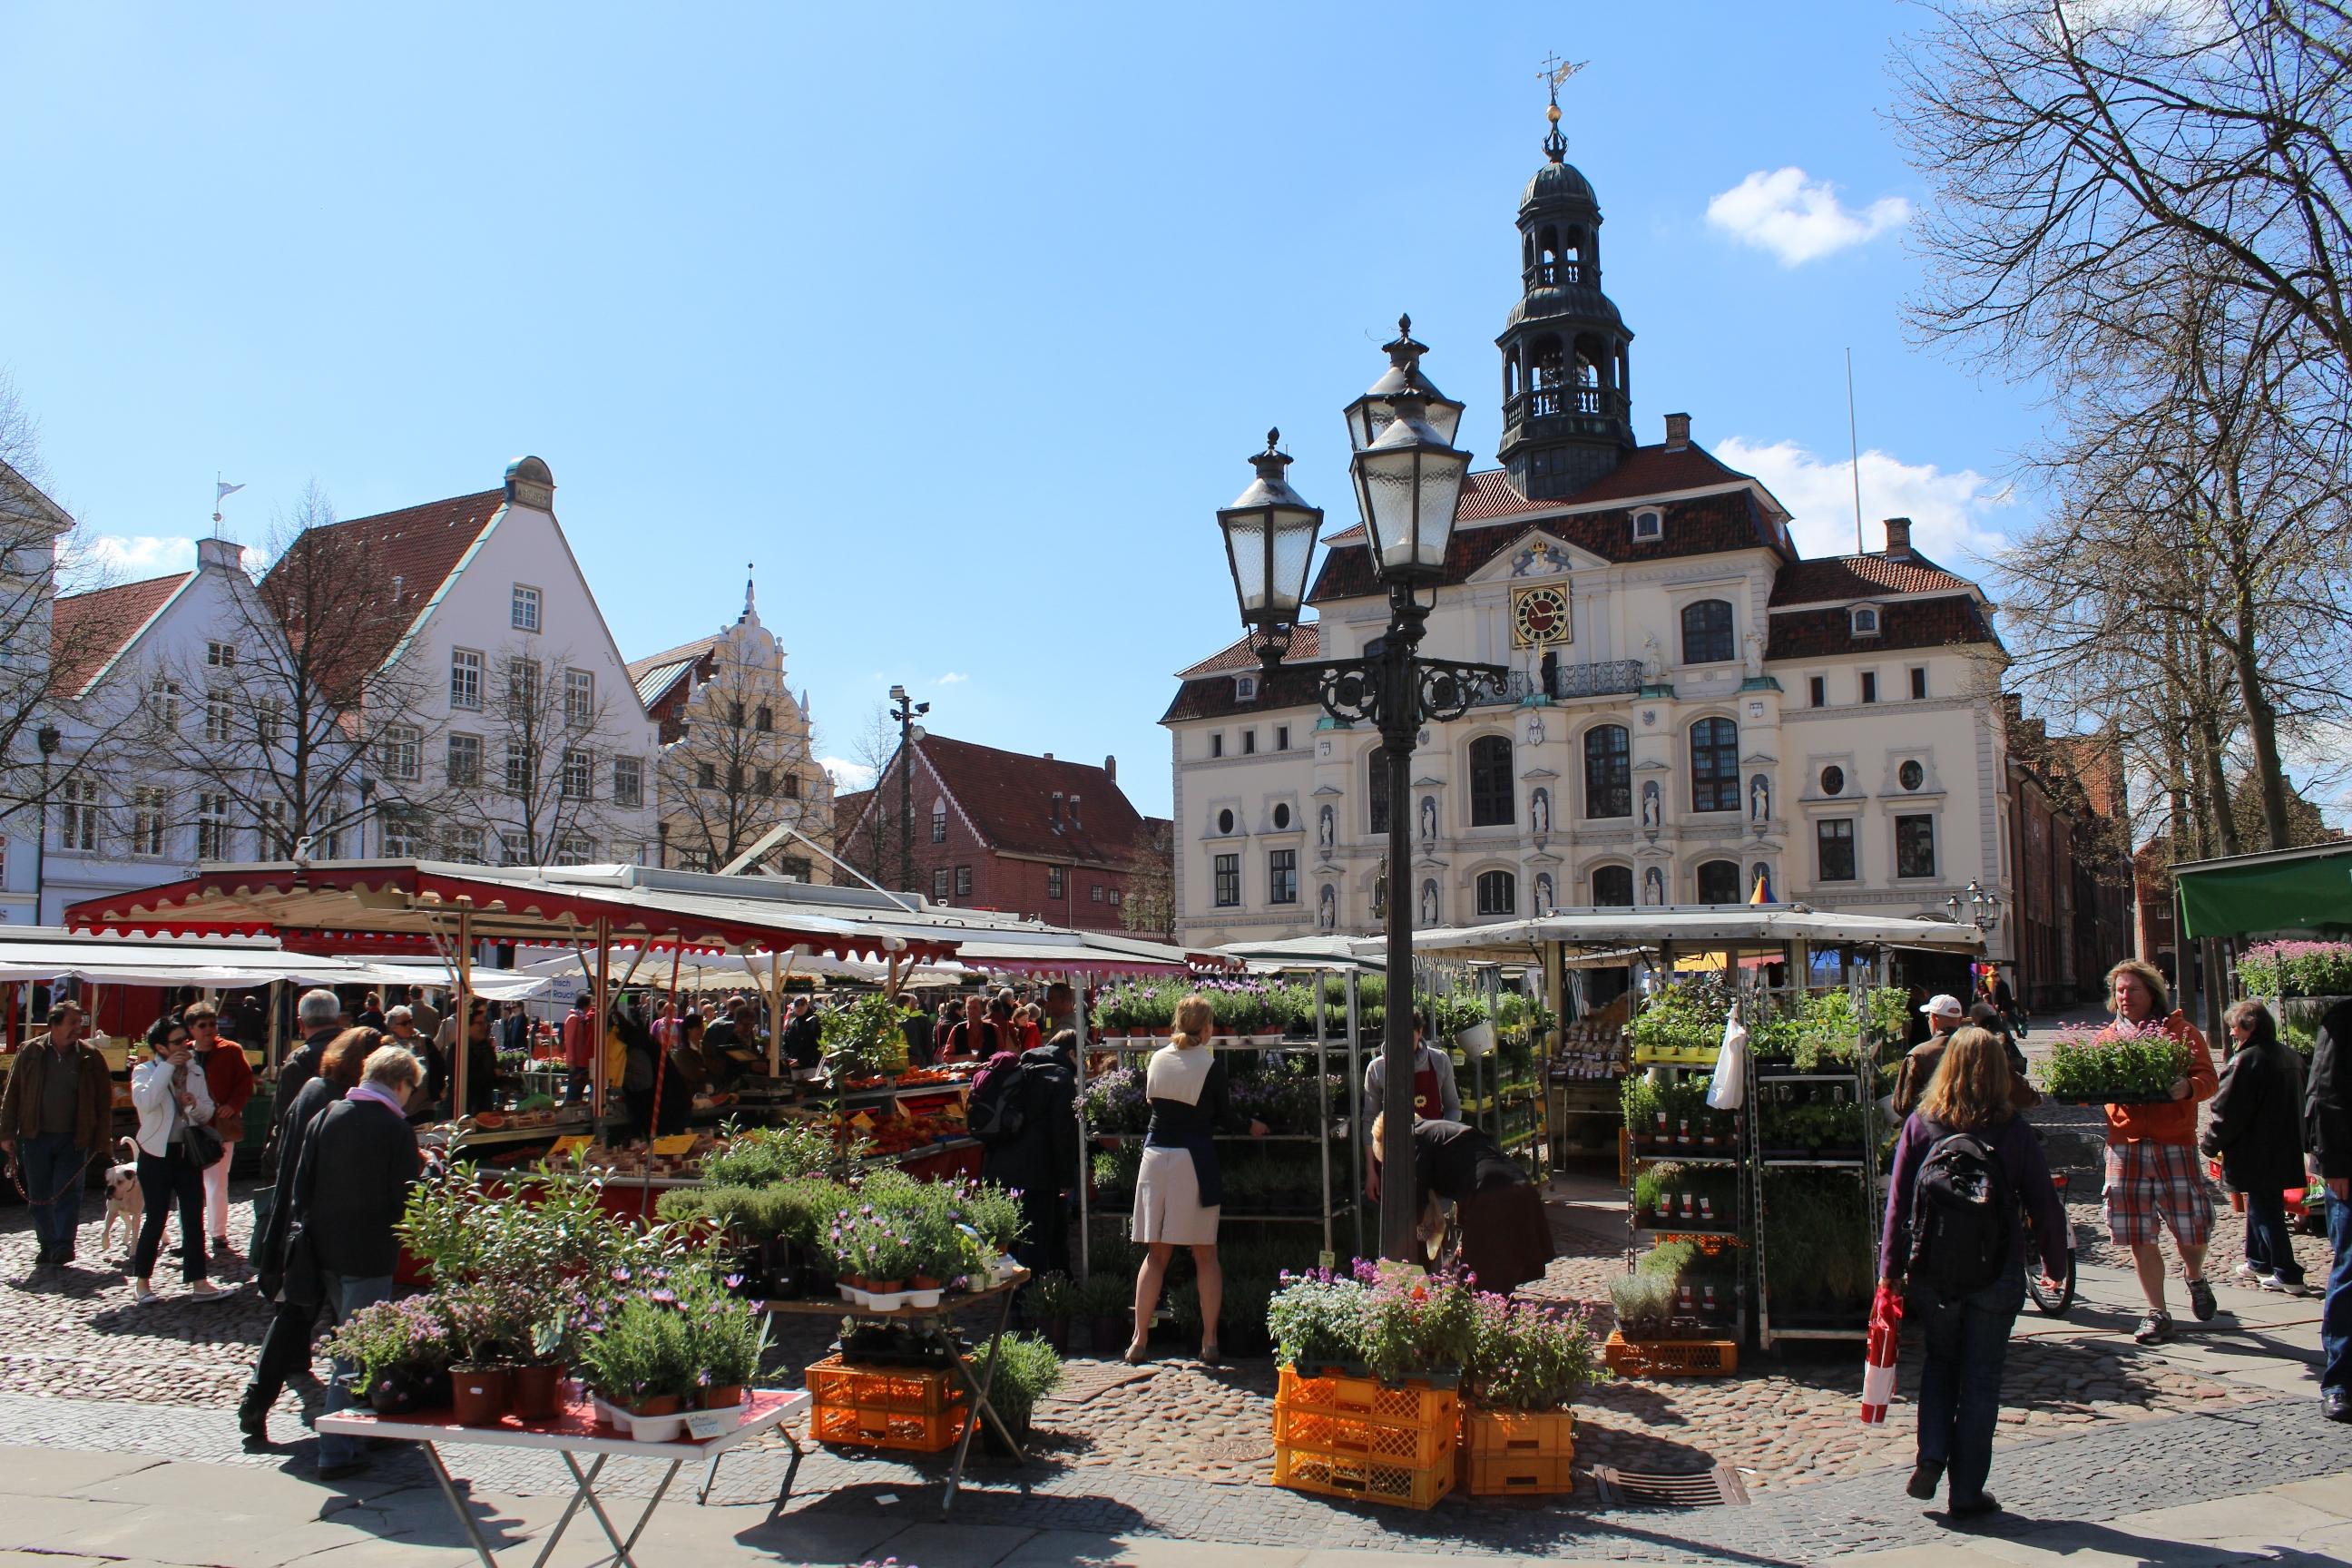 Lüneburg: weekly market